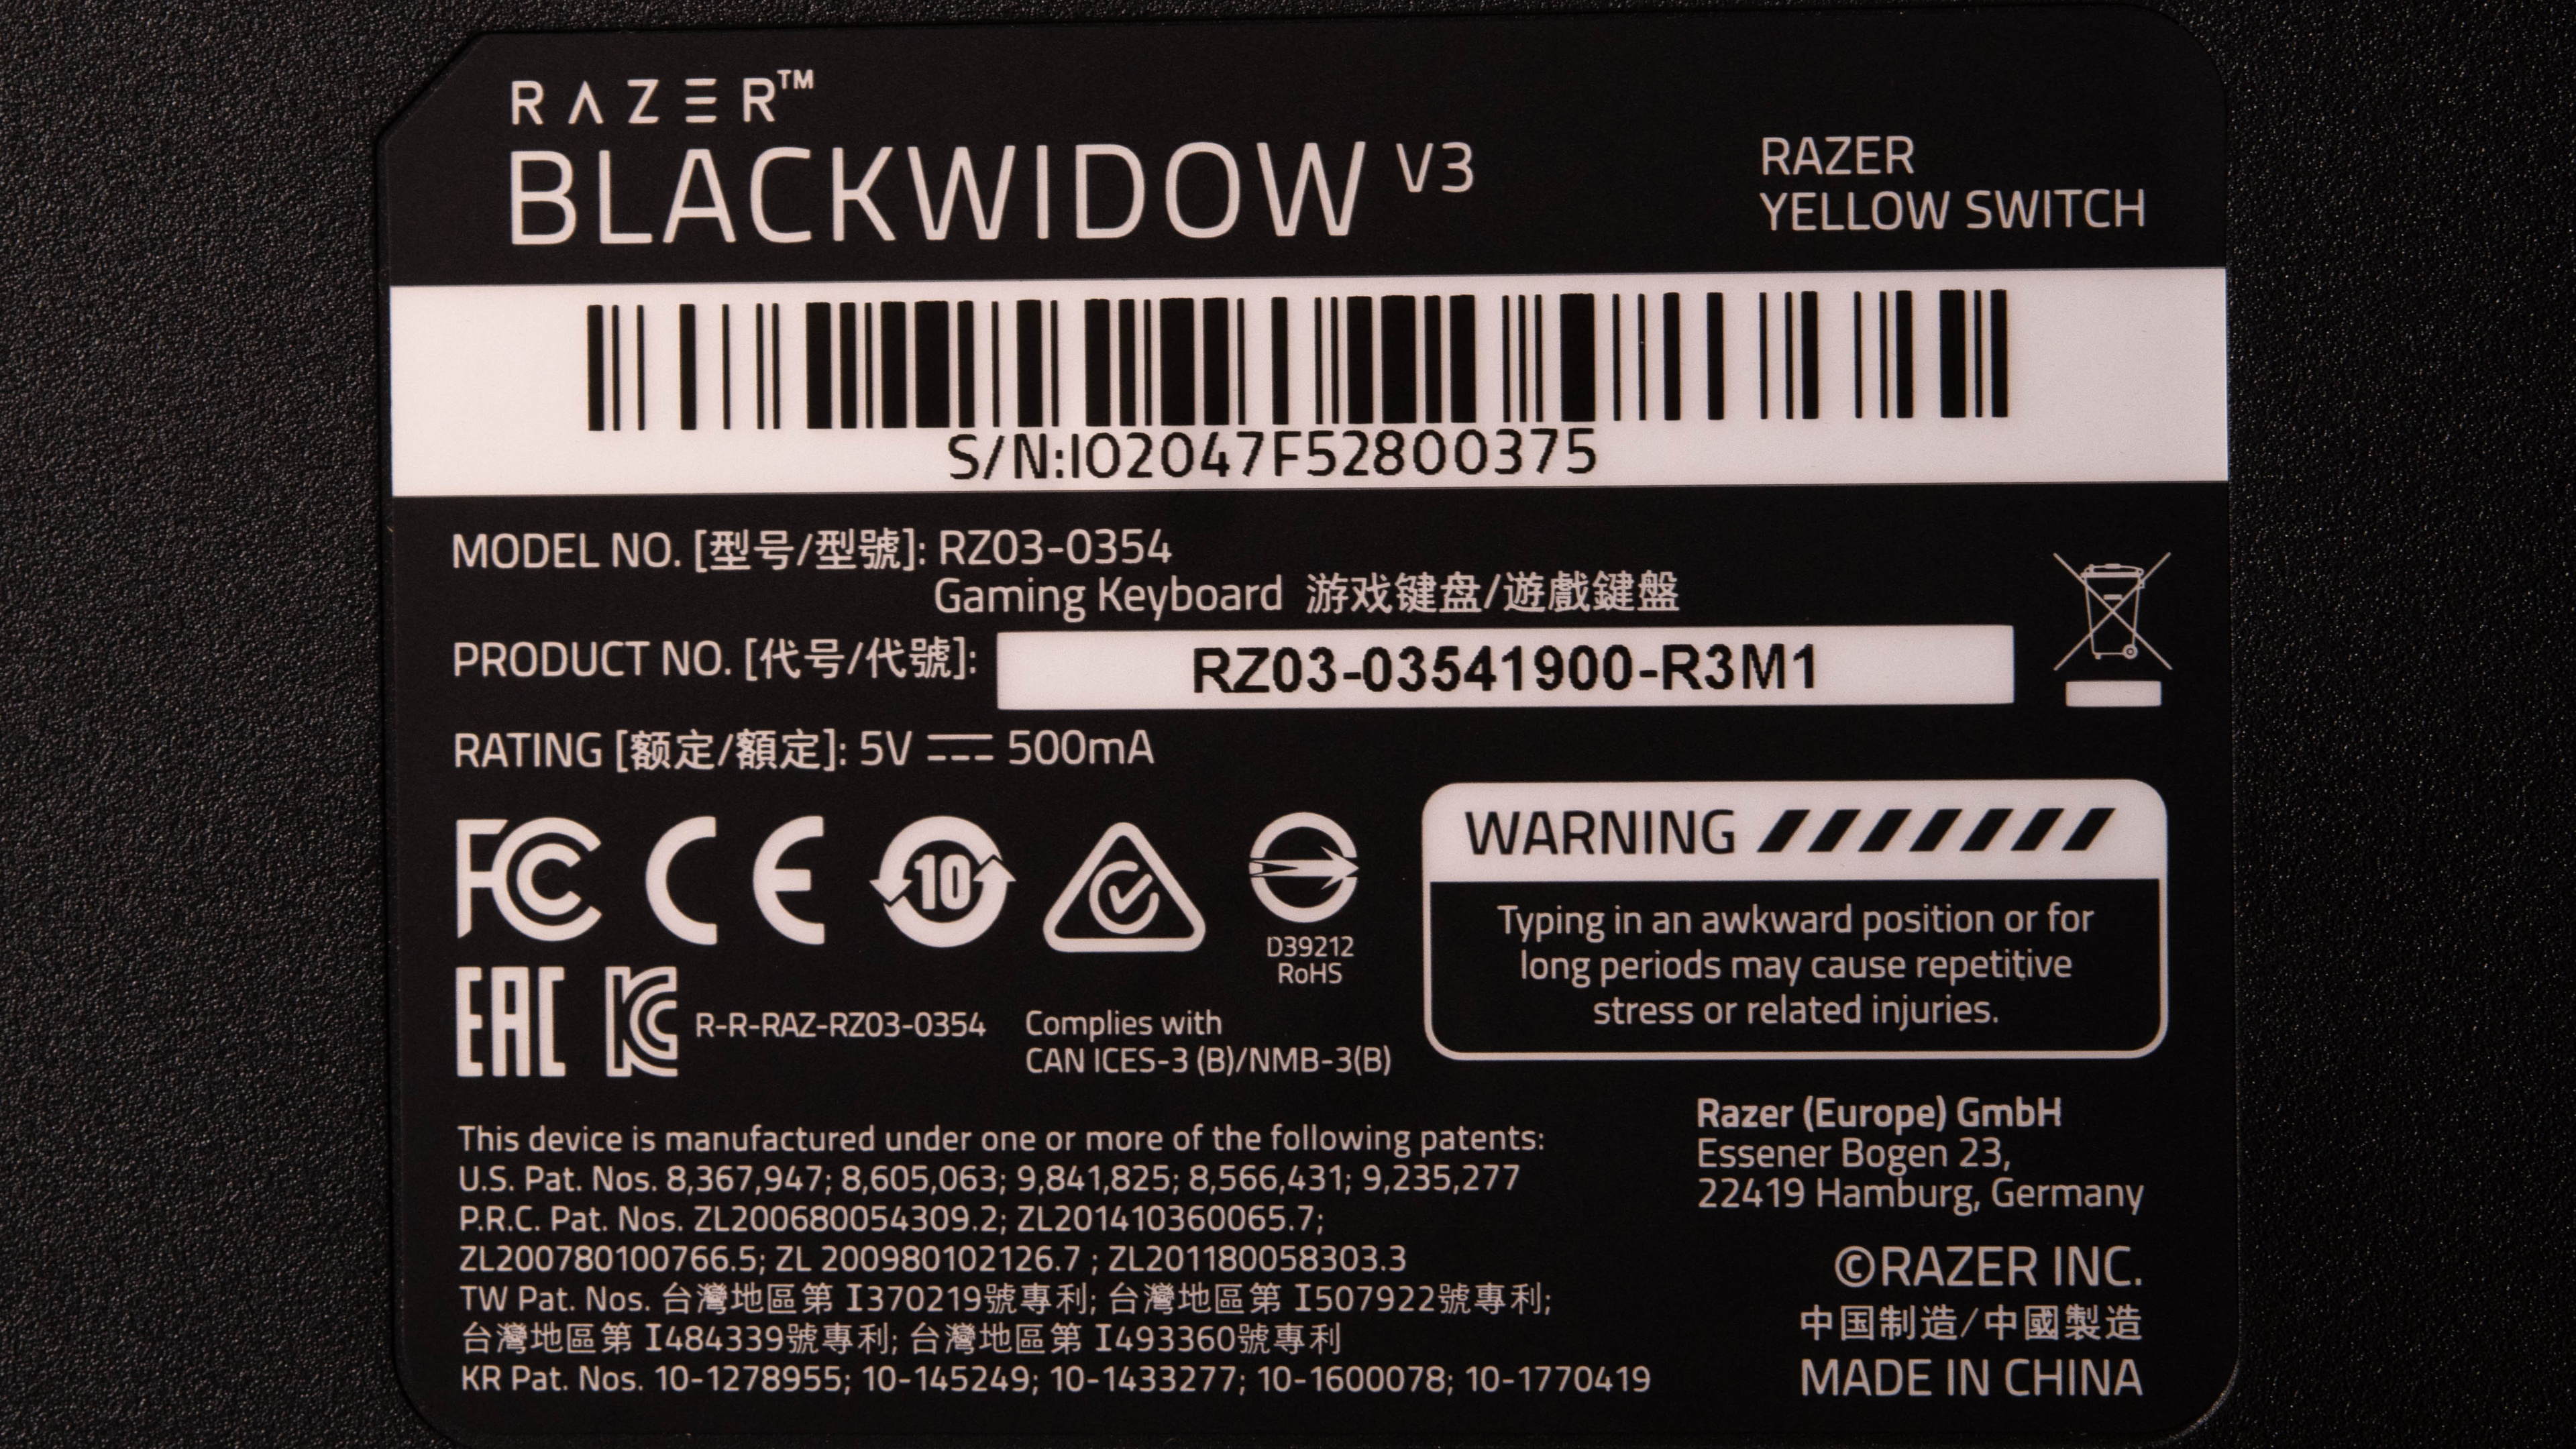 Razer BlackWidow V3 review